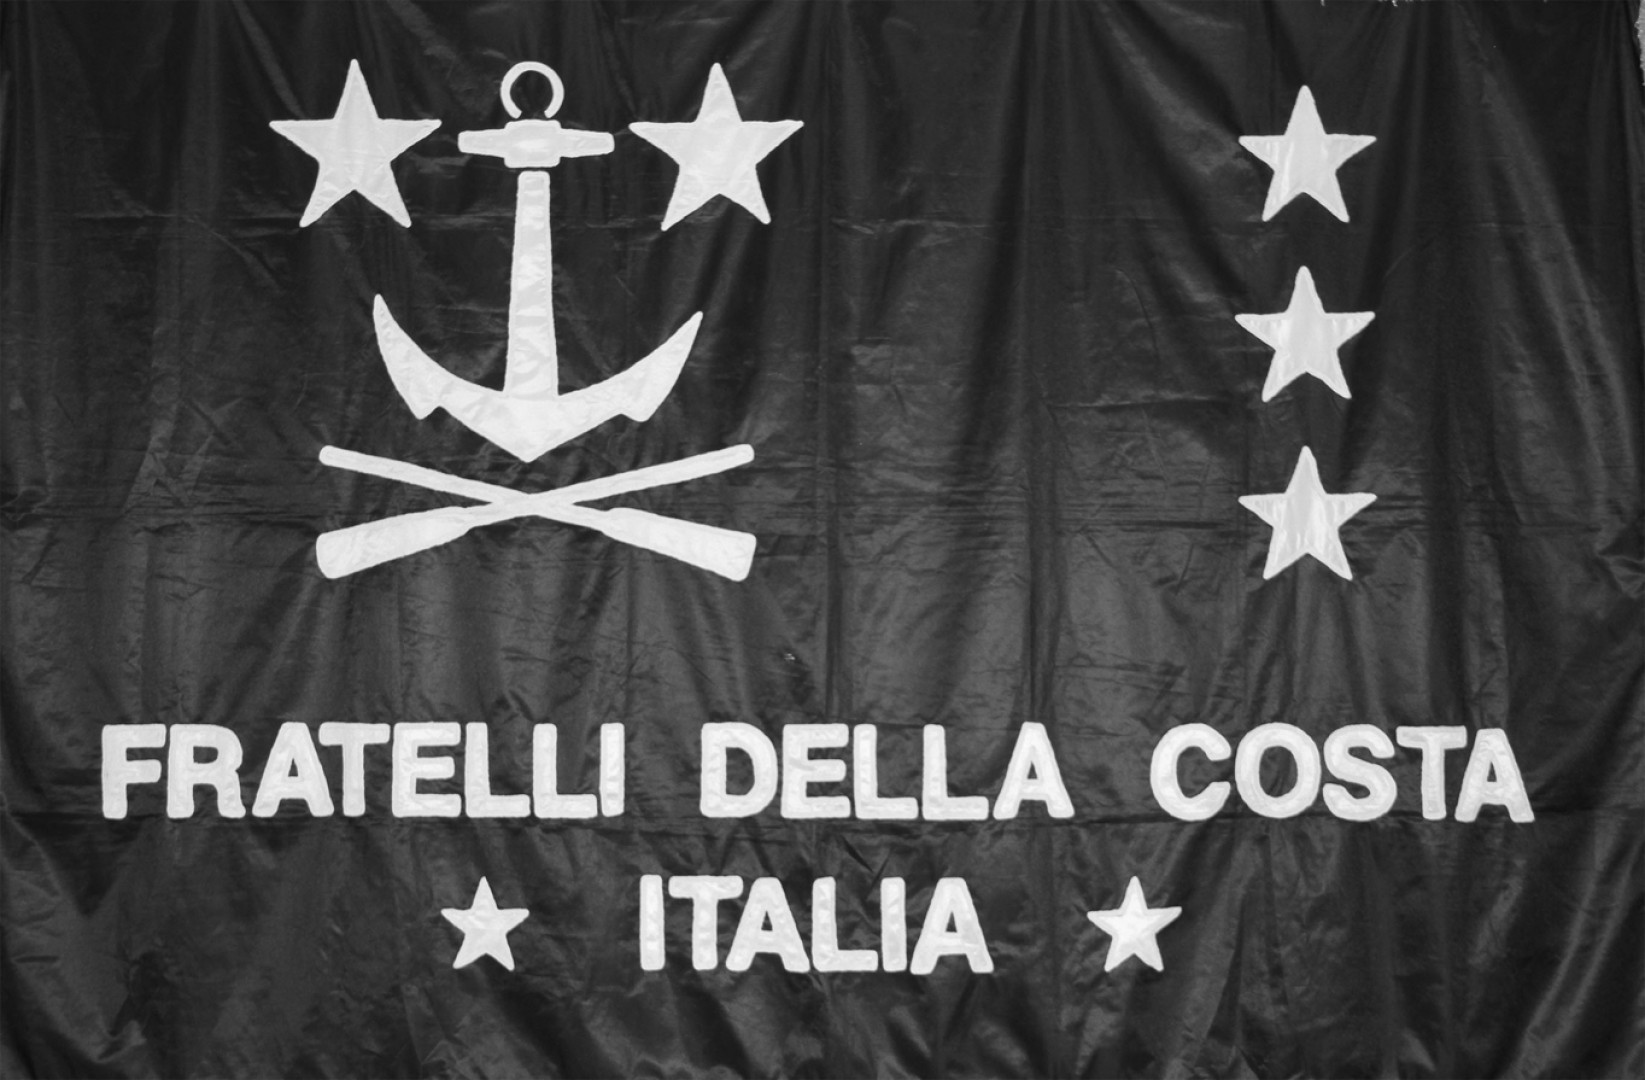 La bandiera della Fratellanza italiana